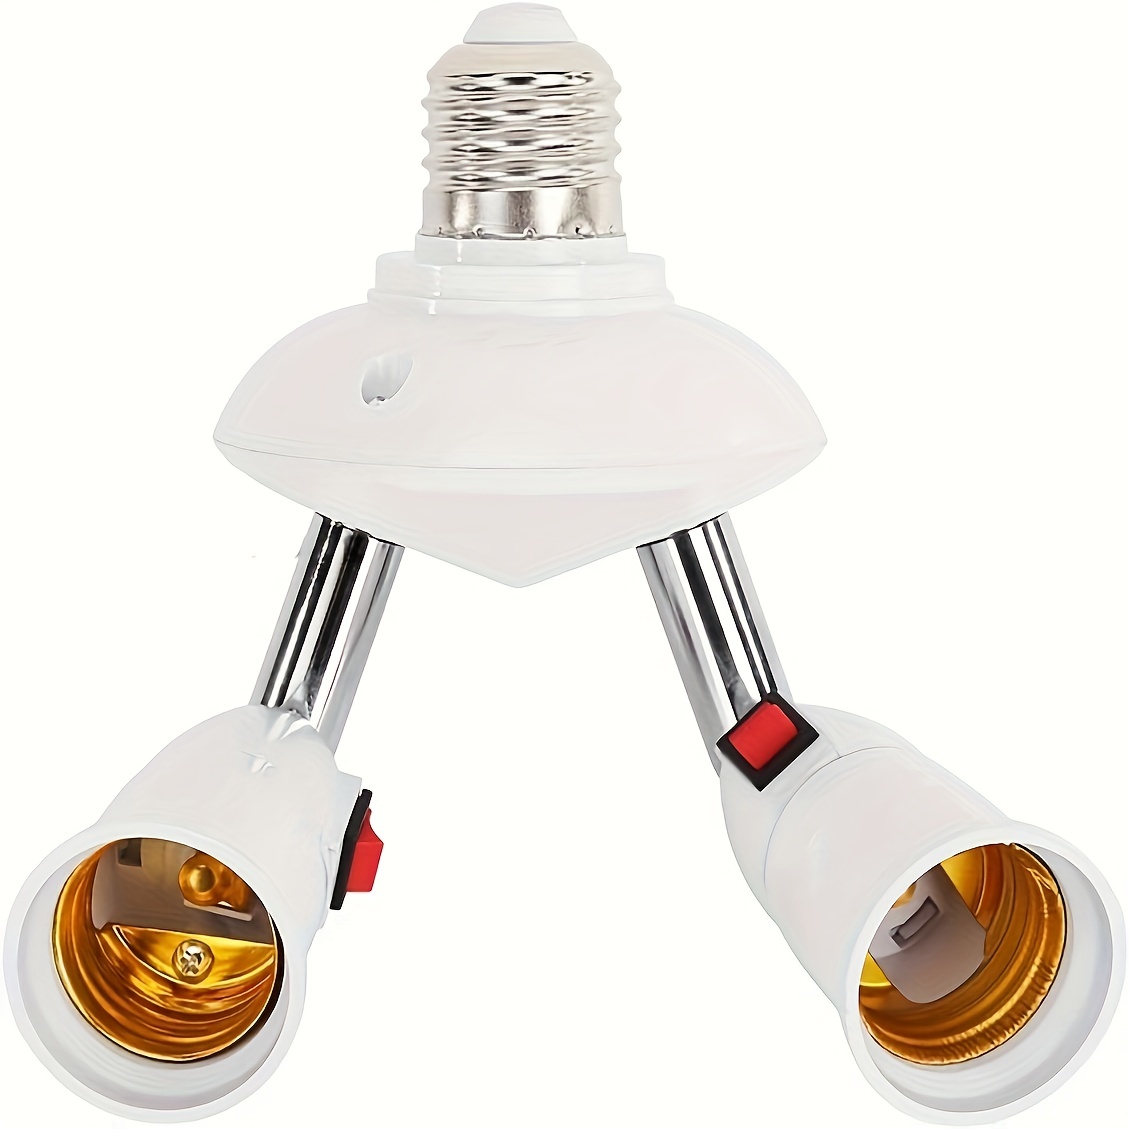 4 in 1 E26/E27 Base Lamp Socket Adapter Splitter